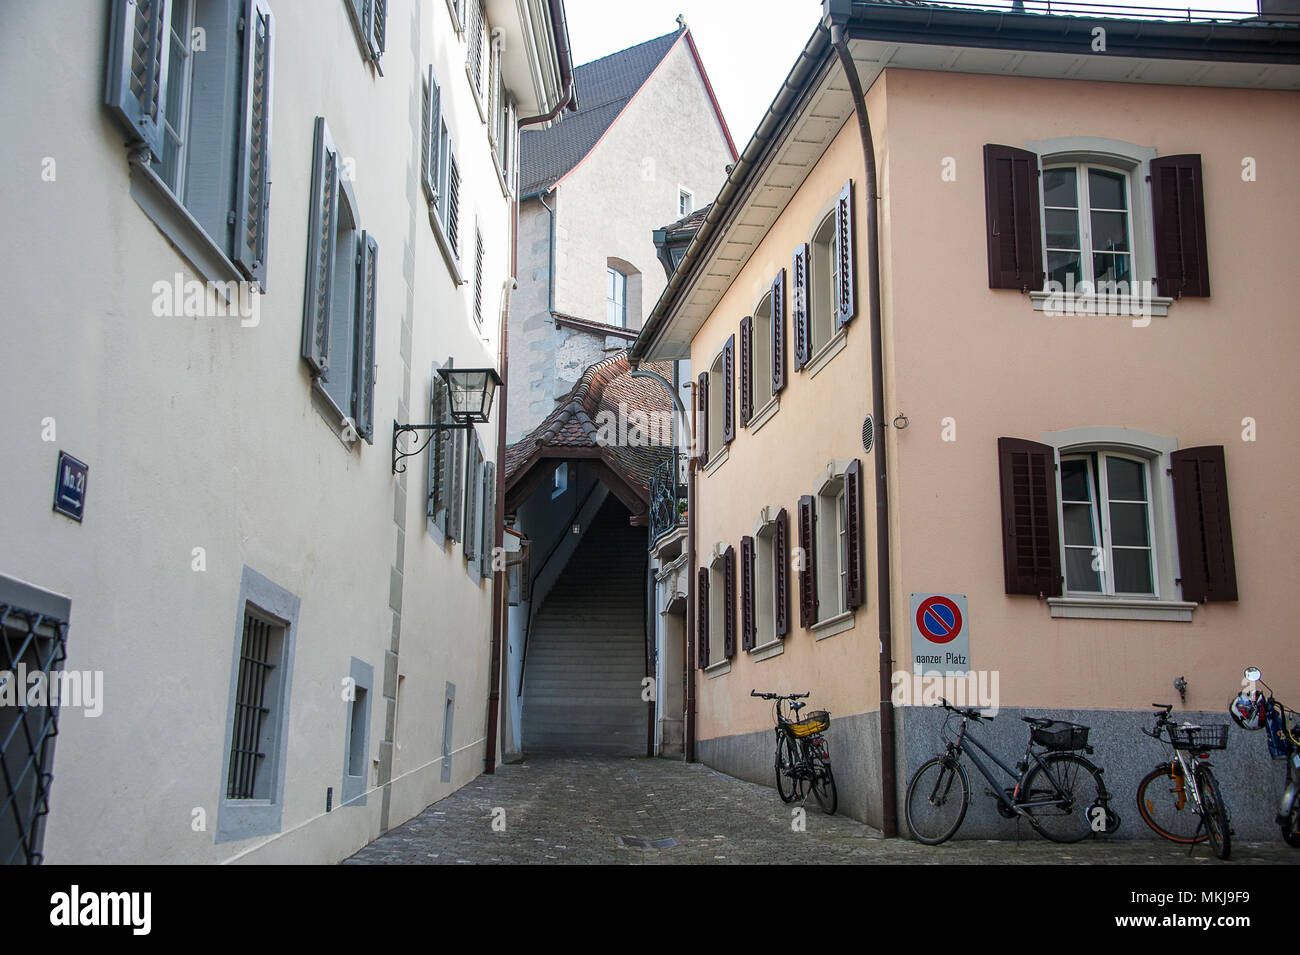 Vieille ville de Zoug, Suisse. Maisons de couleur pastel et des vélos en stationnement, dans une zone d'accès restreint avec "no parking" n'importe où signer (ganzer platz) sur t Banque D'Images